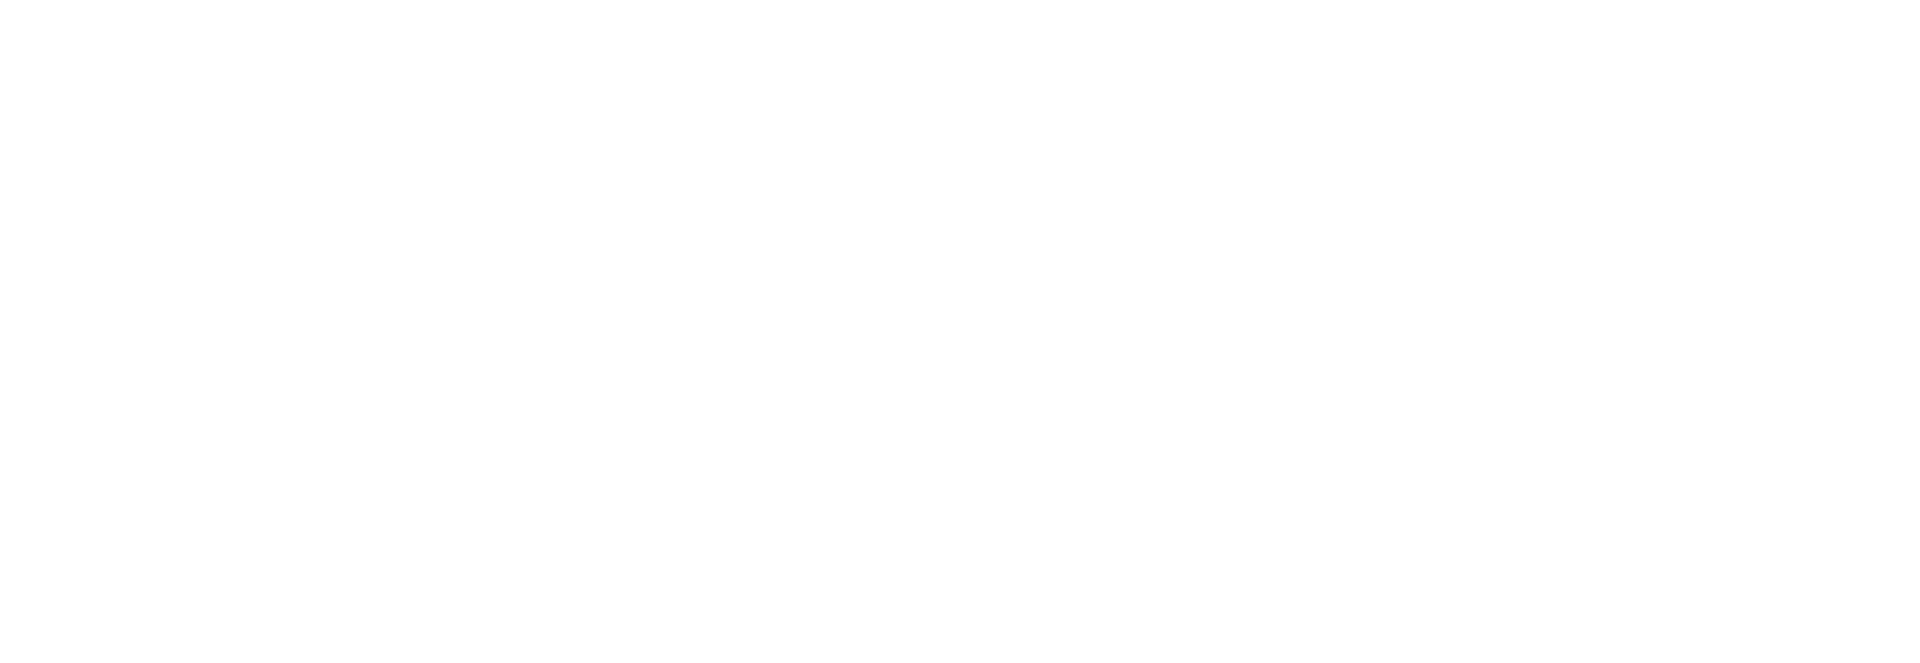 thomas haberer logo